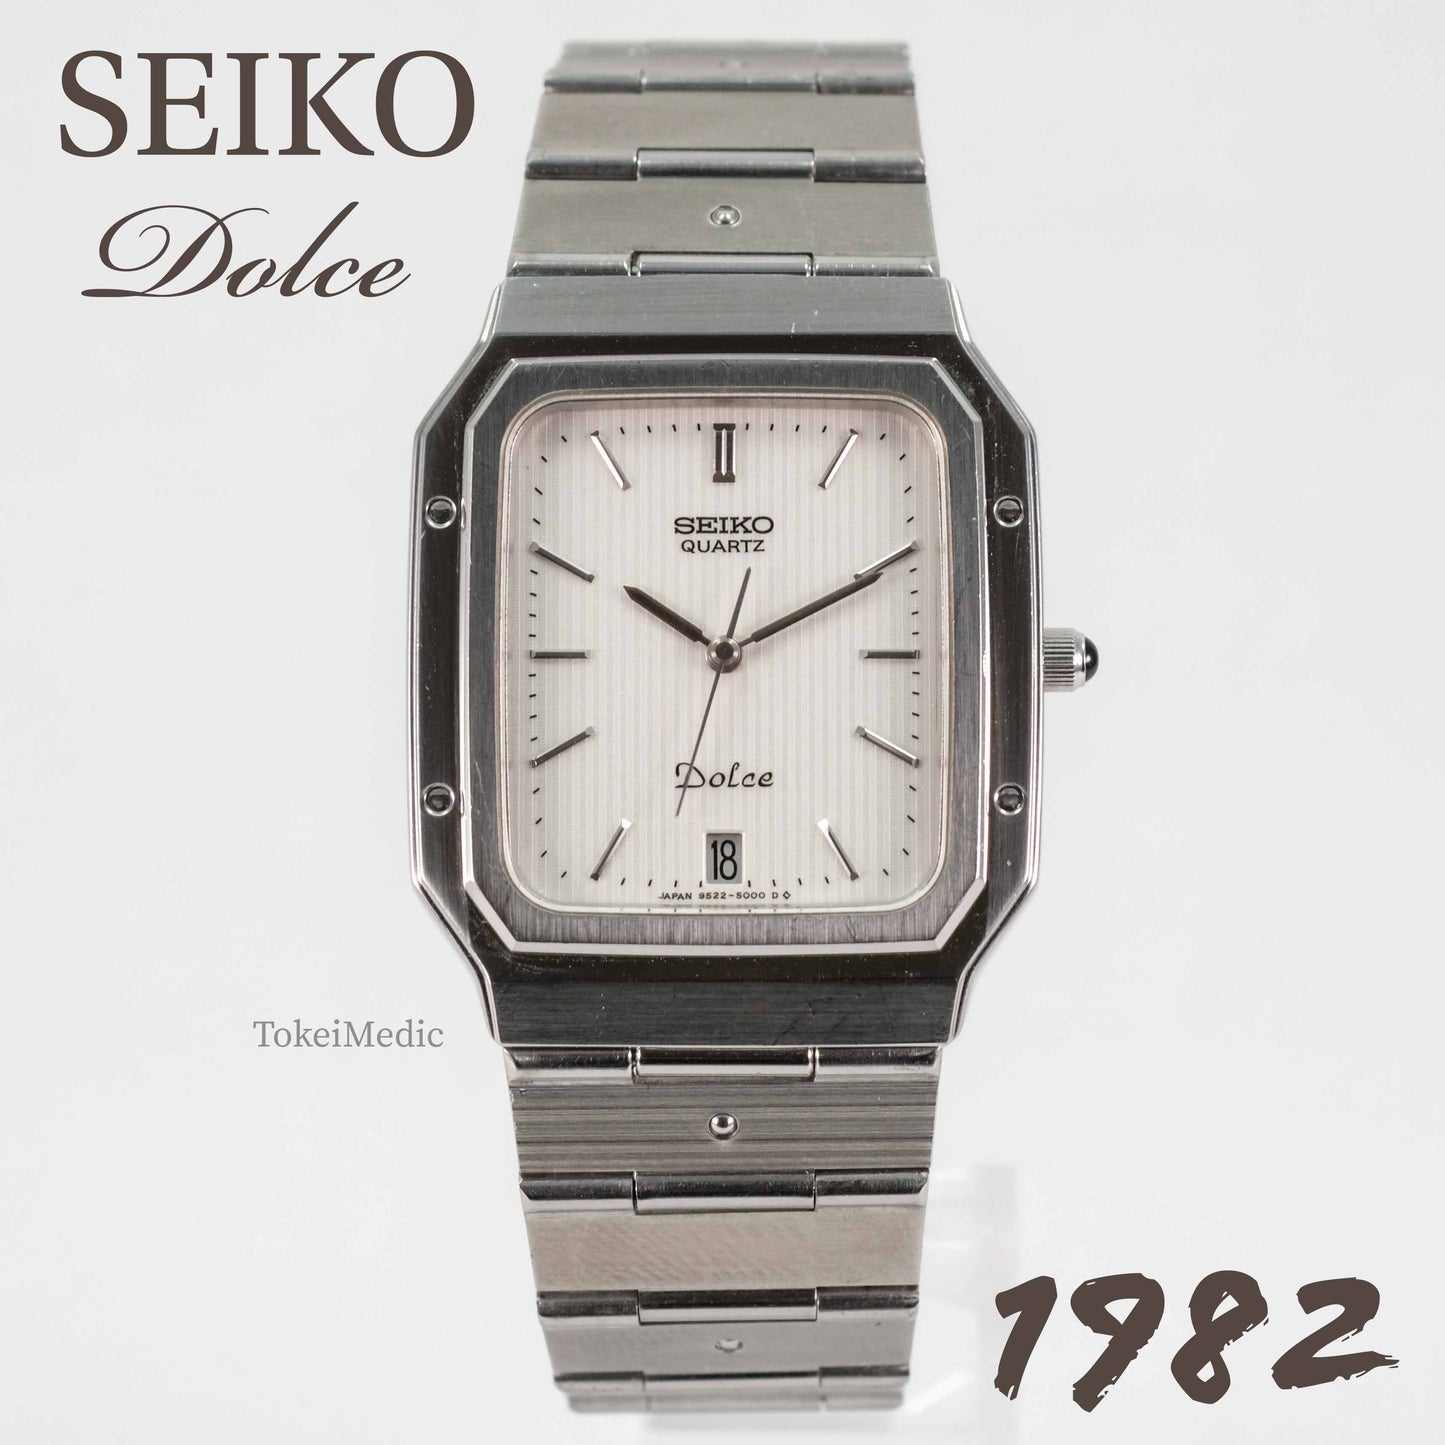 1982 Seiko Dolce 9522-5000